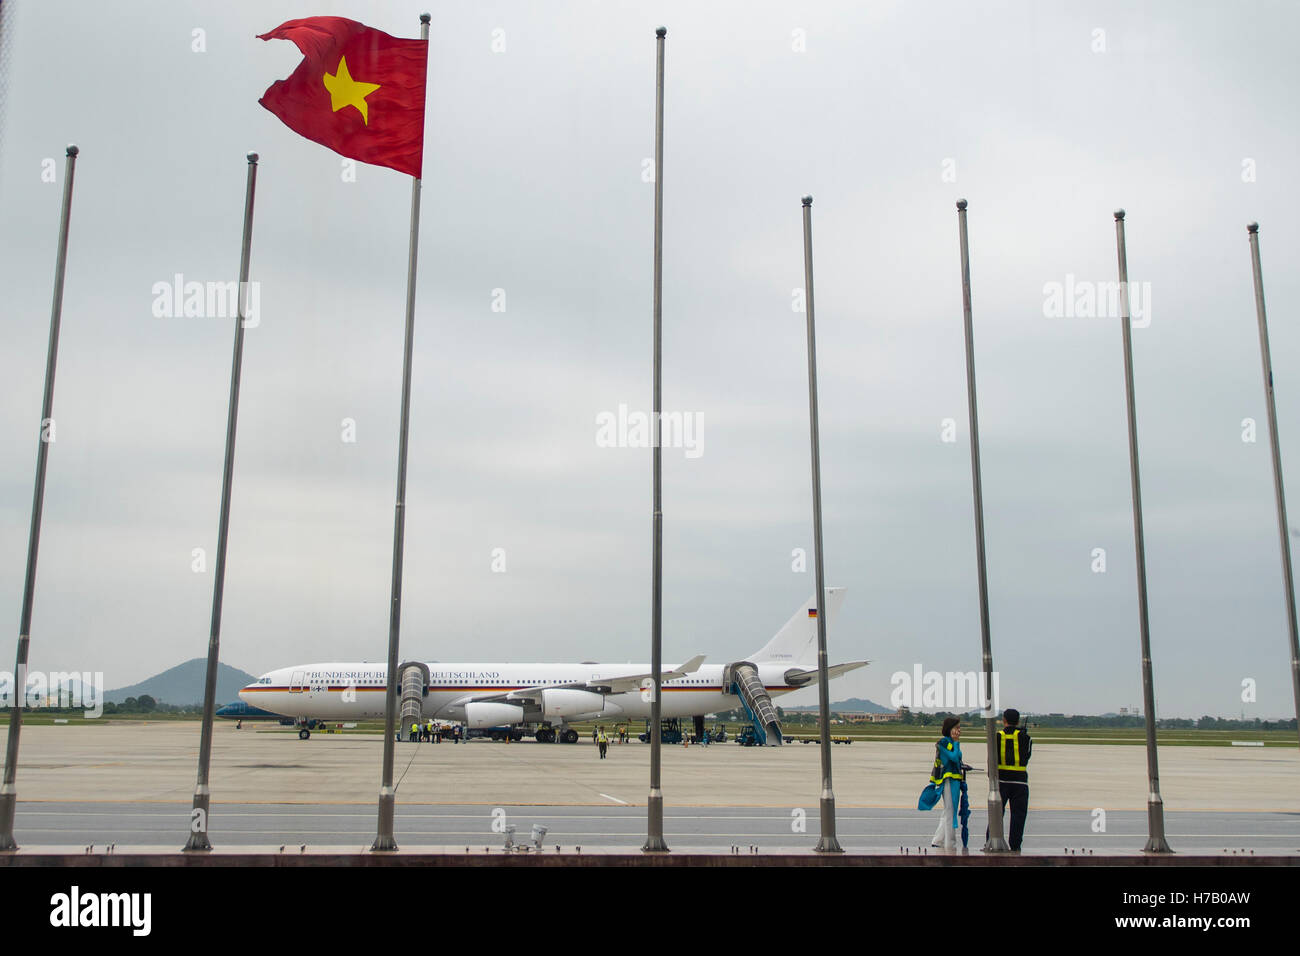 Hanoi, Vietnam. 30 ott 2016. L'Airbus A340 "Konrad Adenauer' della tedesca Air Force può essere visto all'Aeroporto Noi Bai di Hanoi, Vietnam, 30 ottobre 2016. La bandiera vietnamita onde su un palo in primo piano. Foto: GREGOR FISCHER/dpa/Alamy Live News Foto Stock